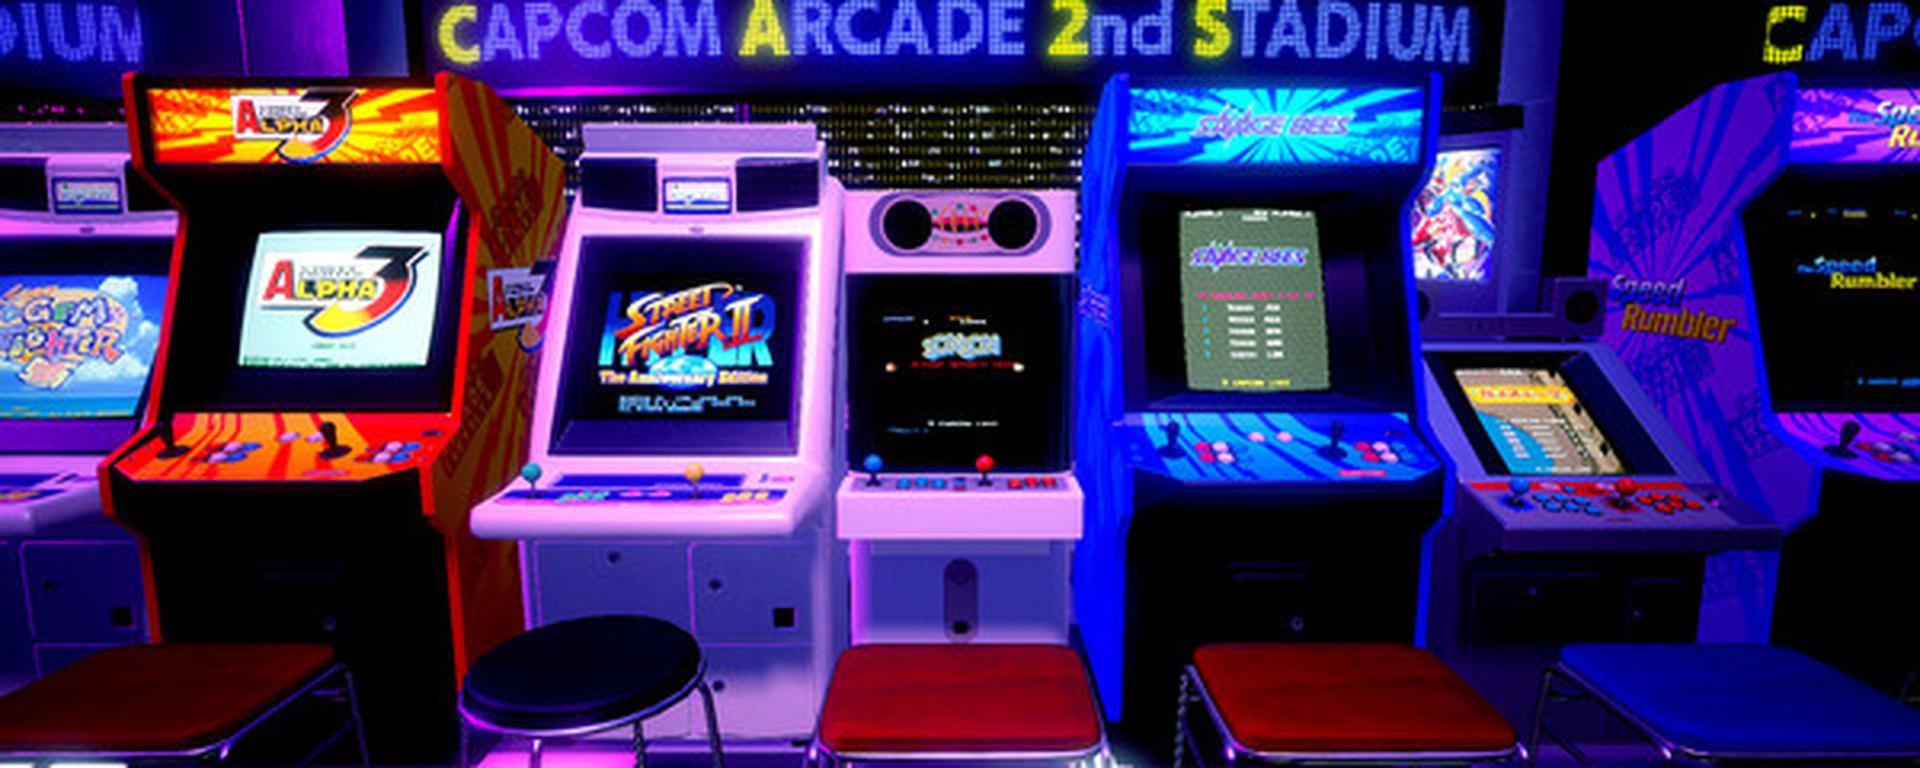 Capcom Arcade 2nd Stadium: viaja a los arcades de los años 80 y 90 pero con monedas infinitas (REVIEW)